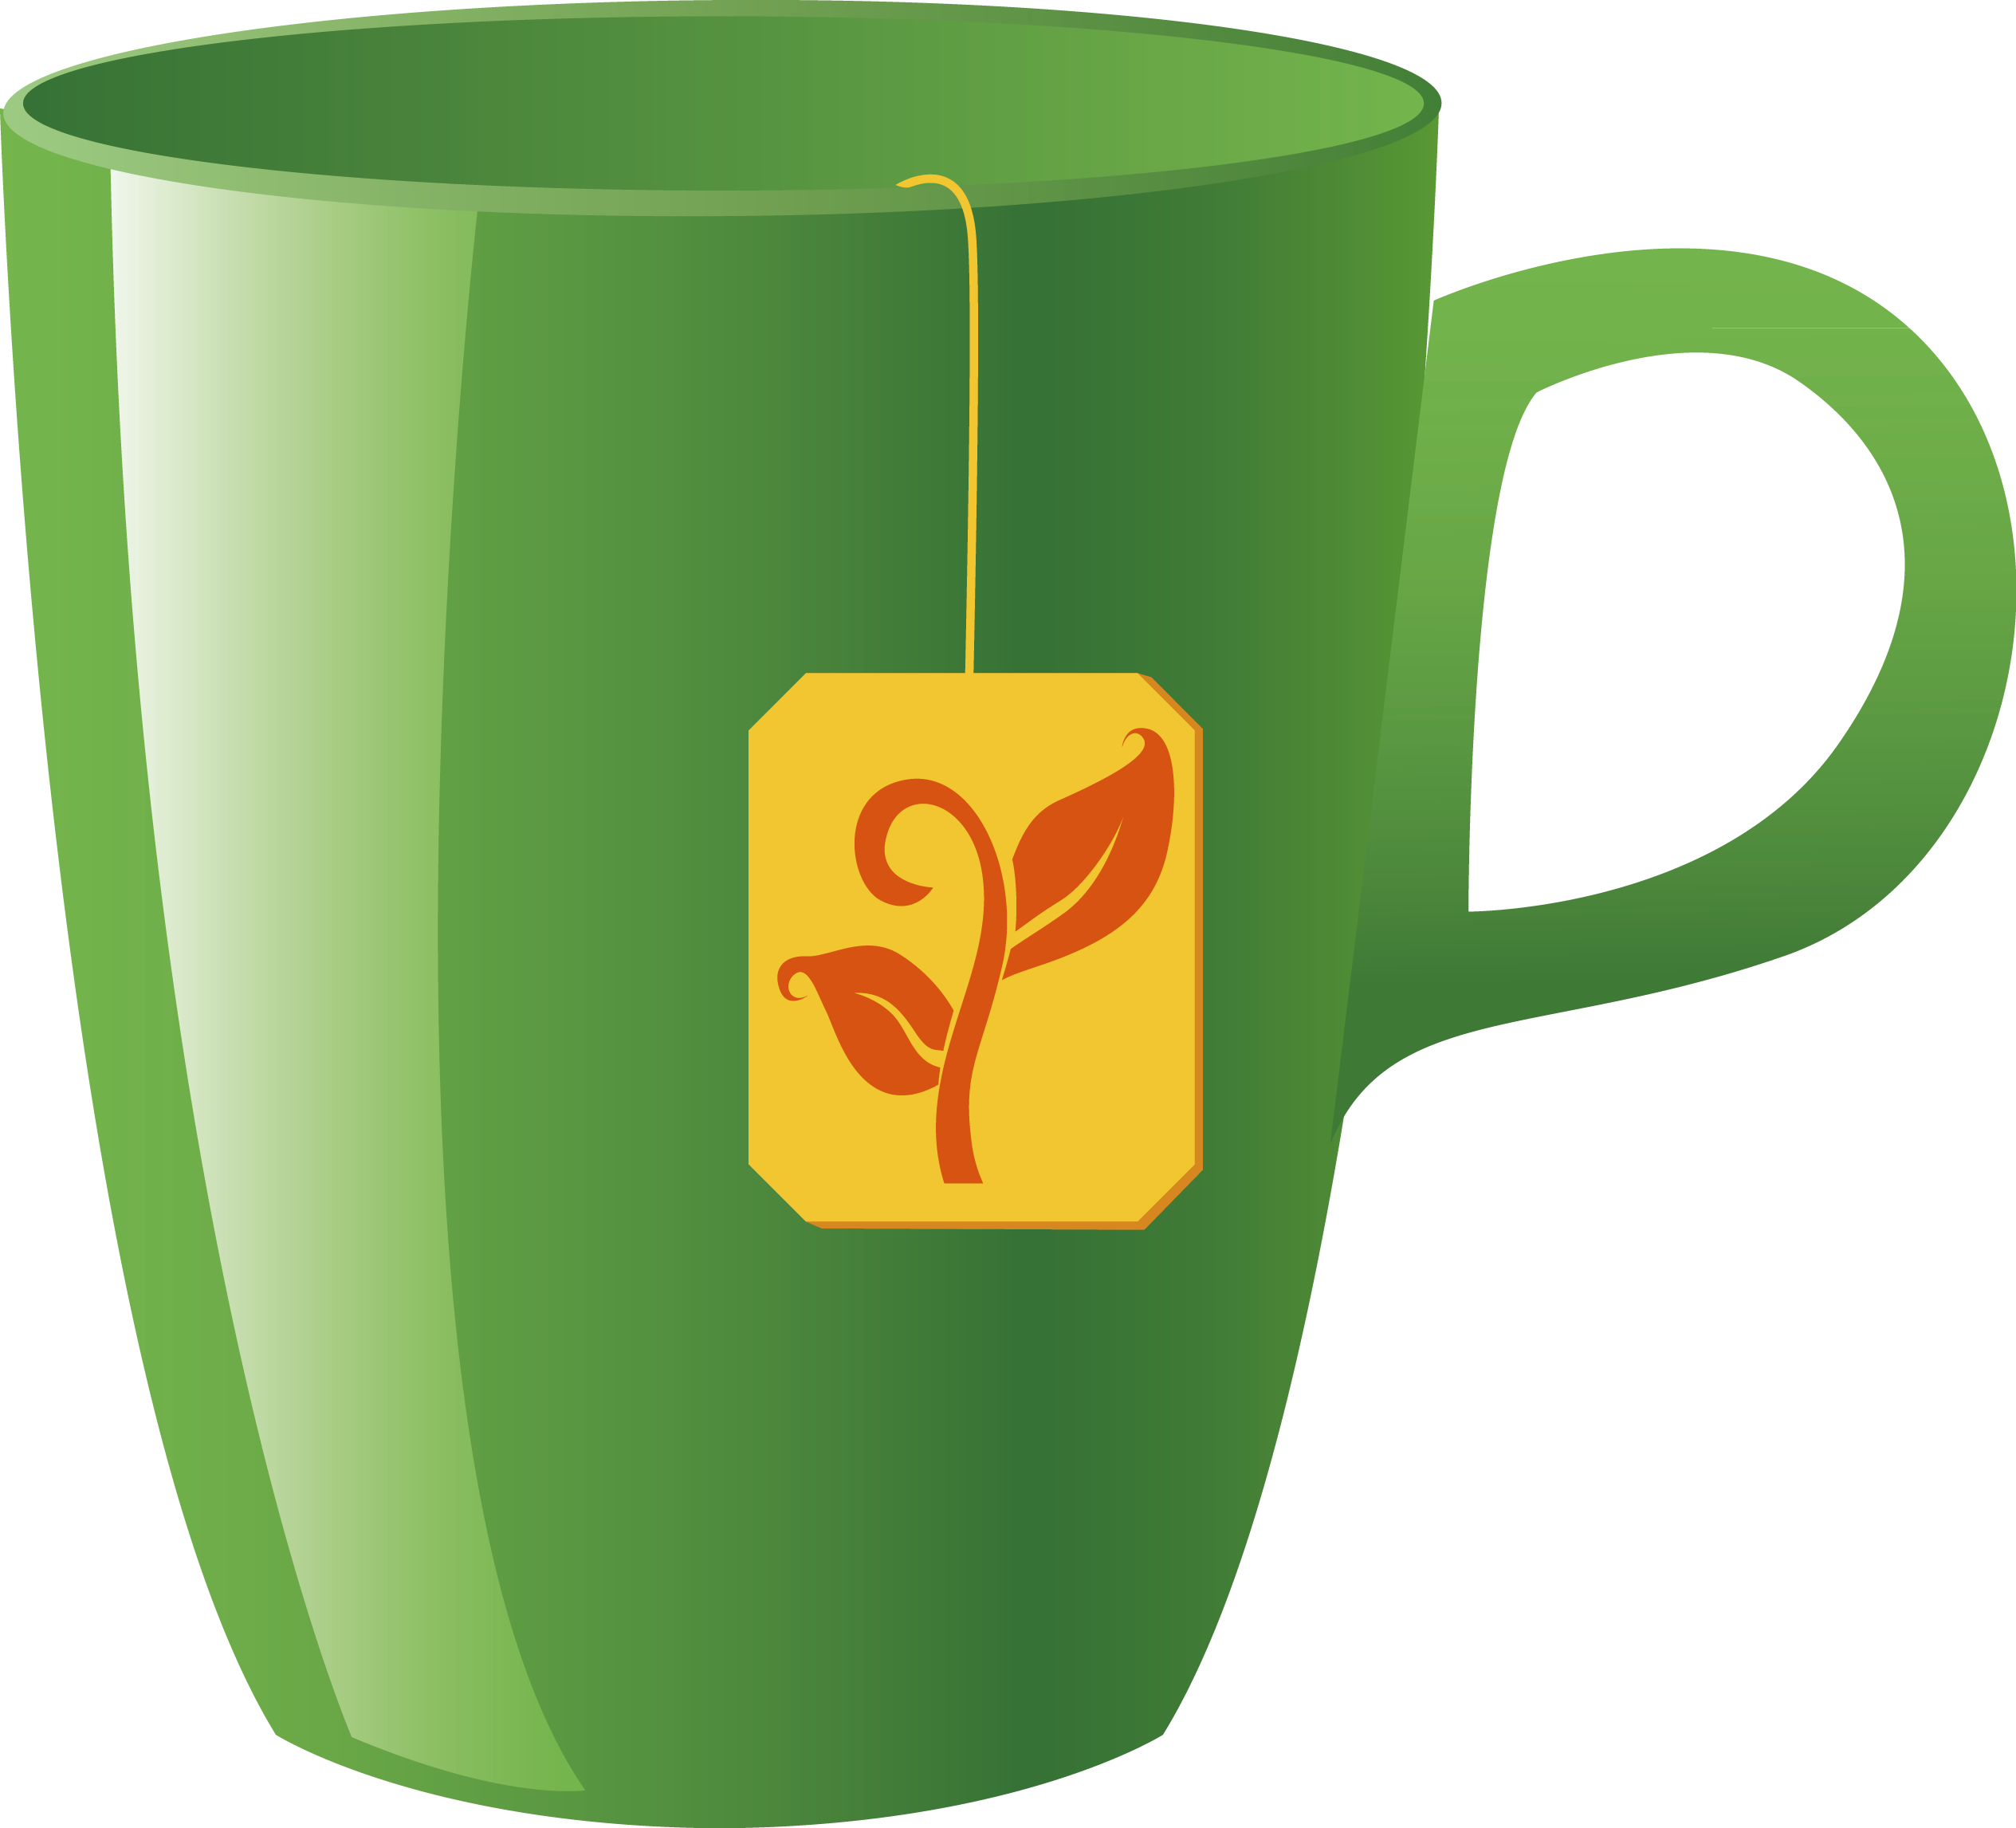 Green Tea Coffee Cup - Green Tea Coffee Cup (2529x2293)